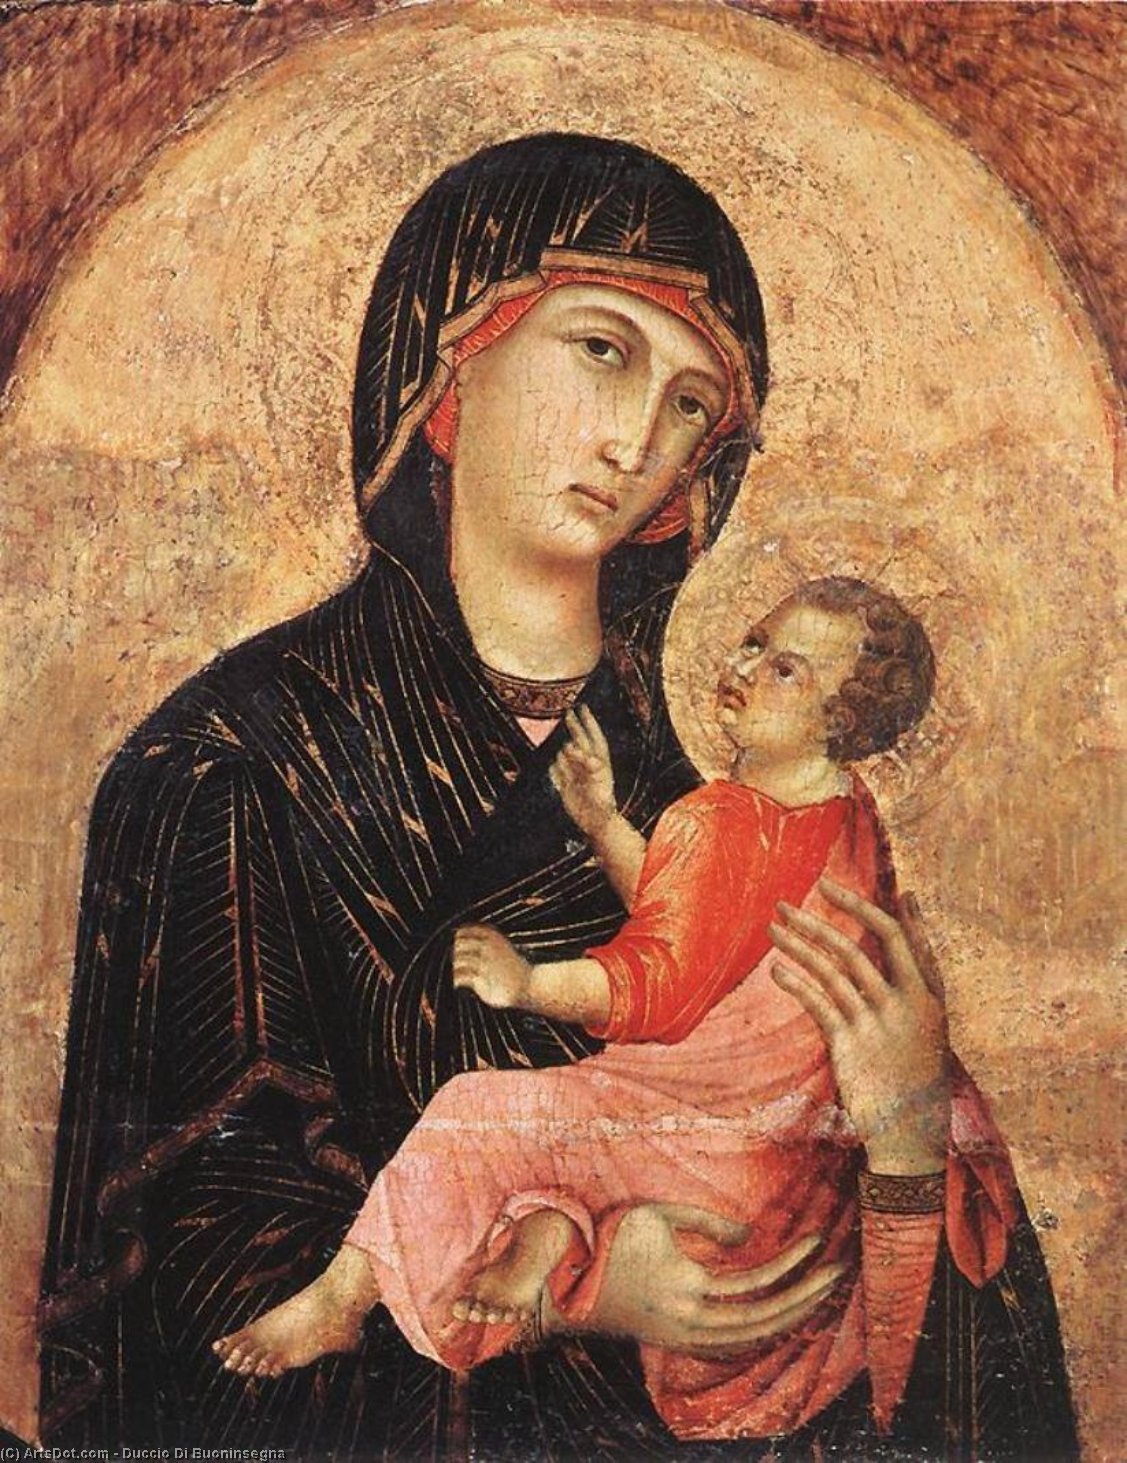 WikiOO.org - Encyclopedia of Fine Arts - Lukisan, Artwork Duccio Di Buoninsegna - Madonna and Child (no. 593)